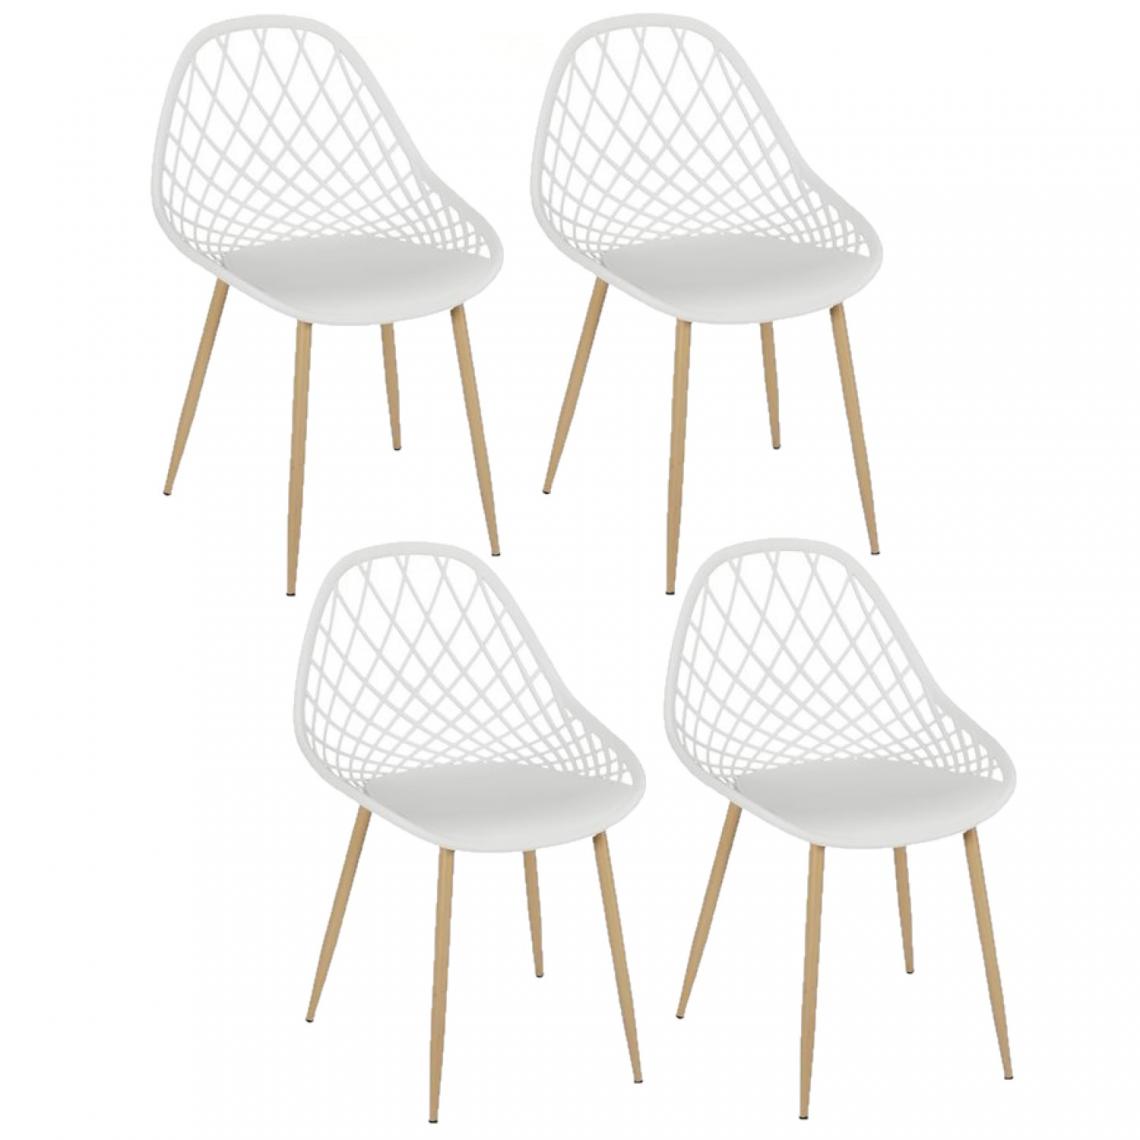 Toilinux - Lot de 4 chaises d'extérieur Malaga en polypropylène - Blanc - Chaises de jardin